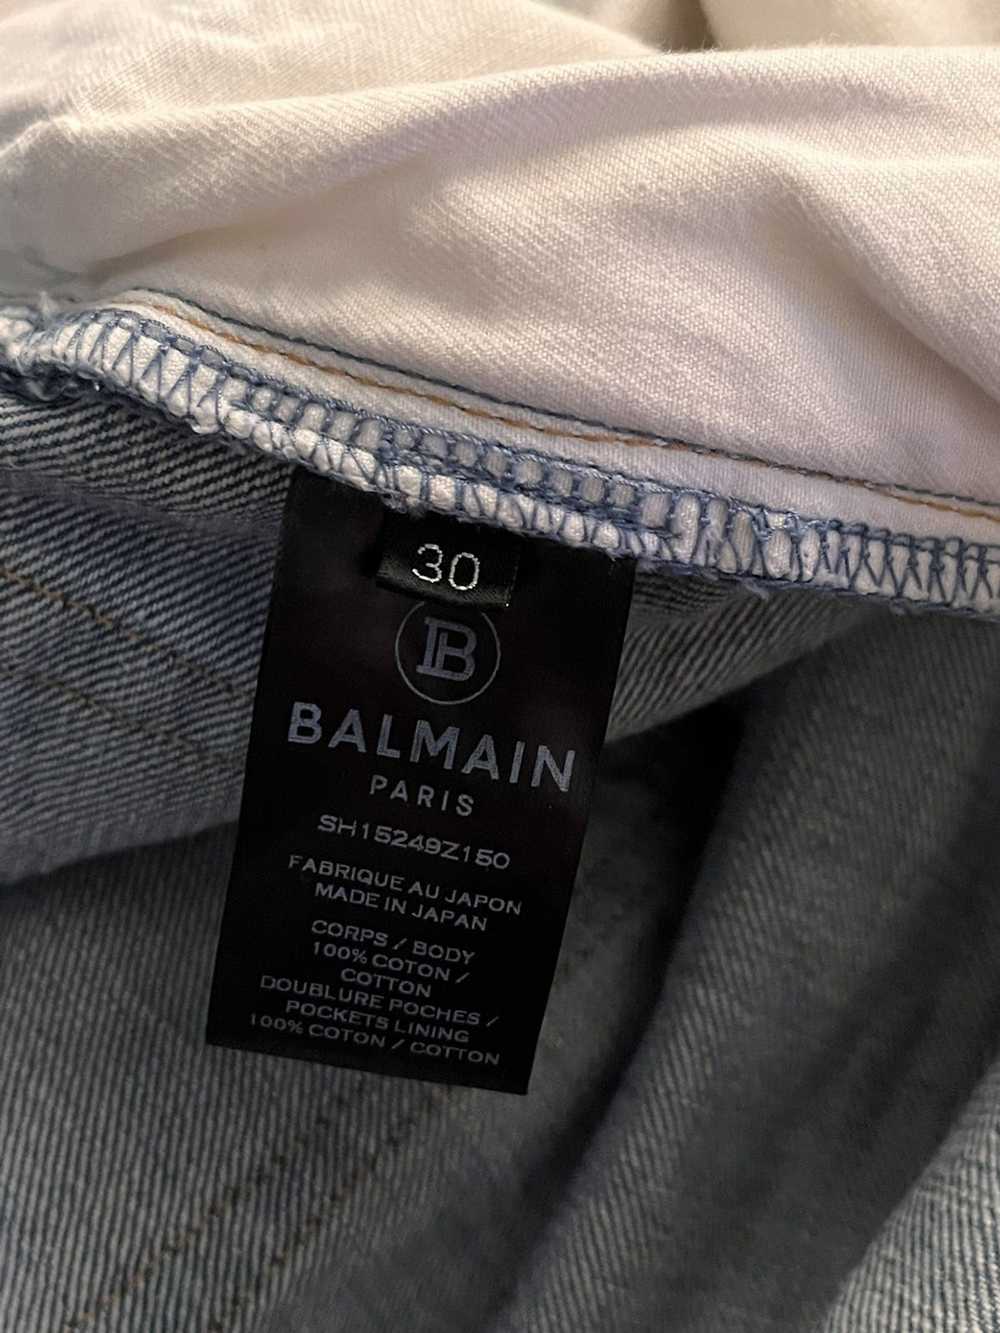 Balmain Balmain Jeans - image 7